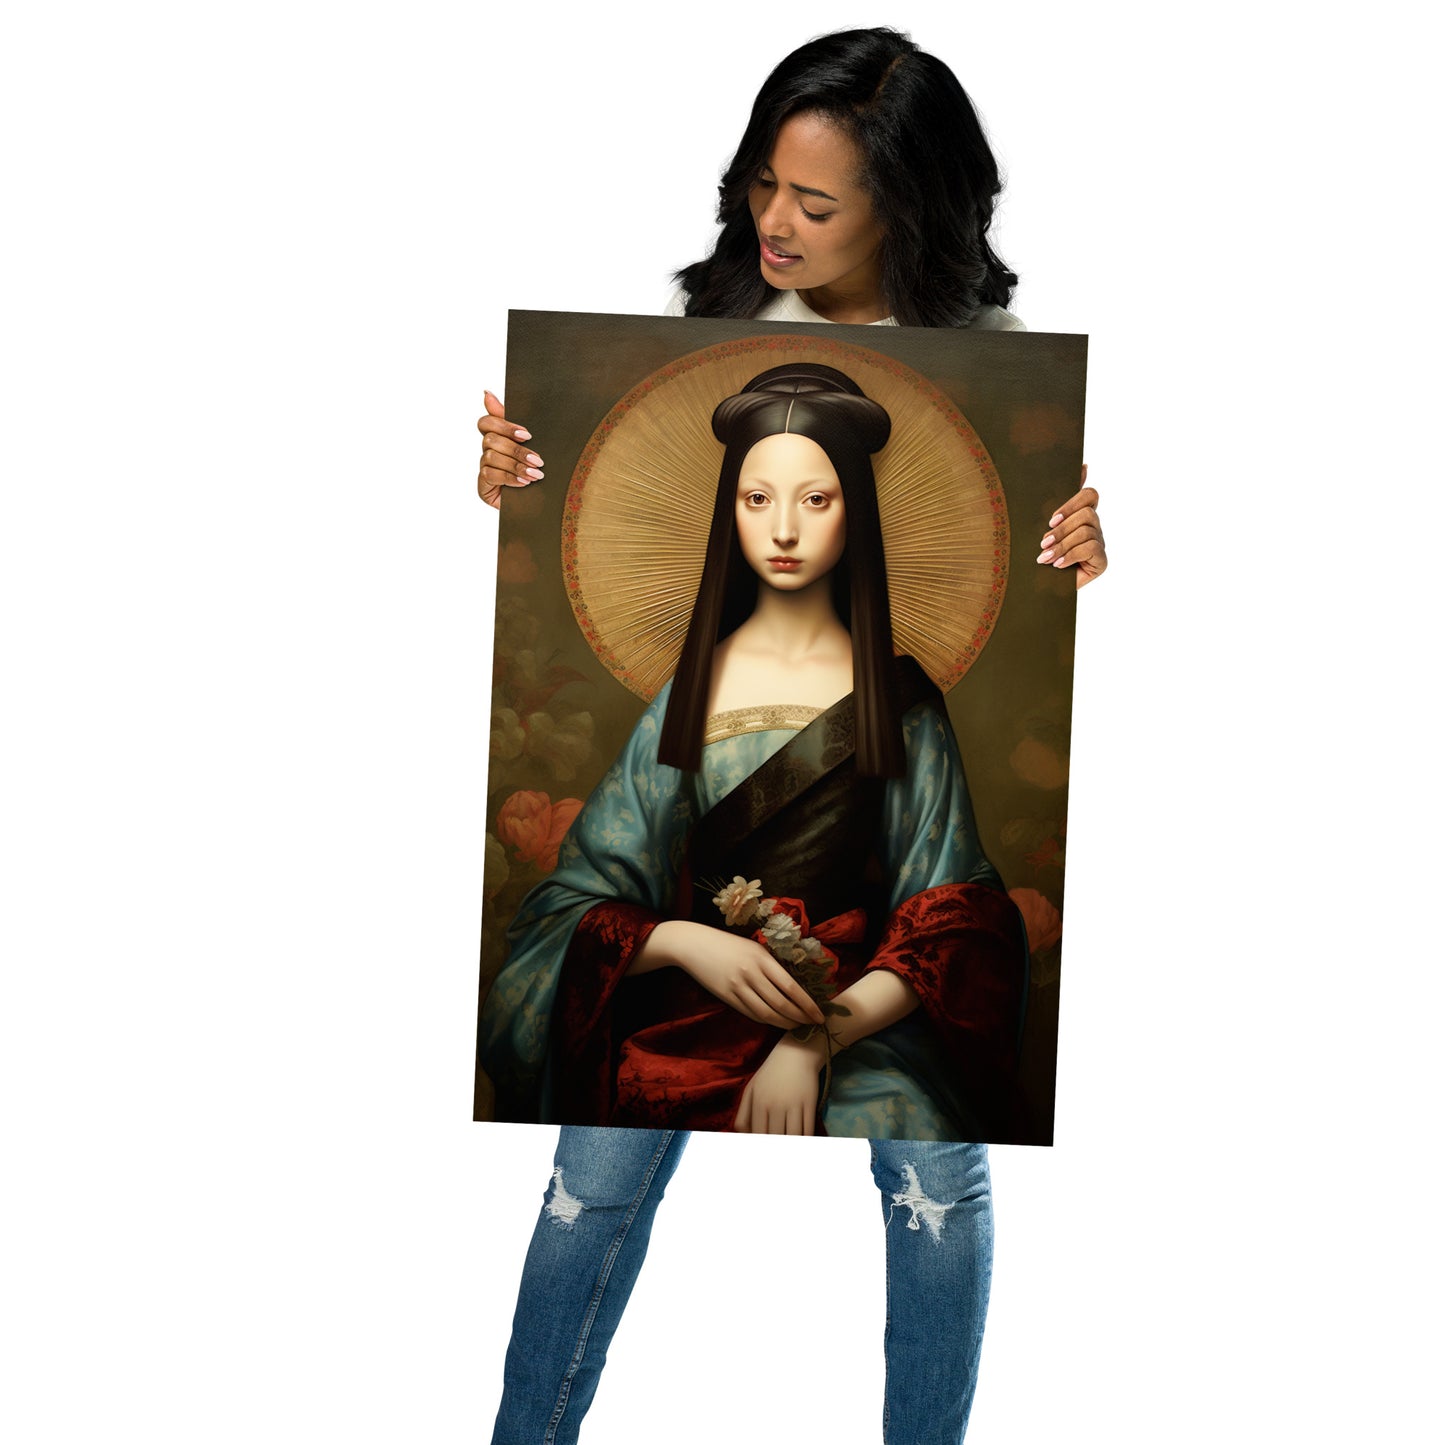 The young Mona Lisa